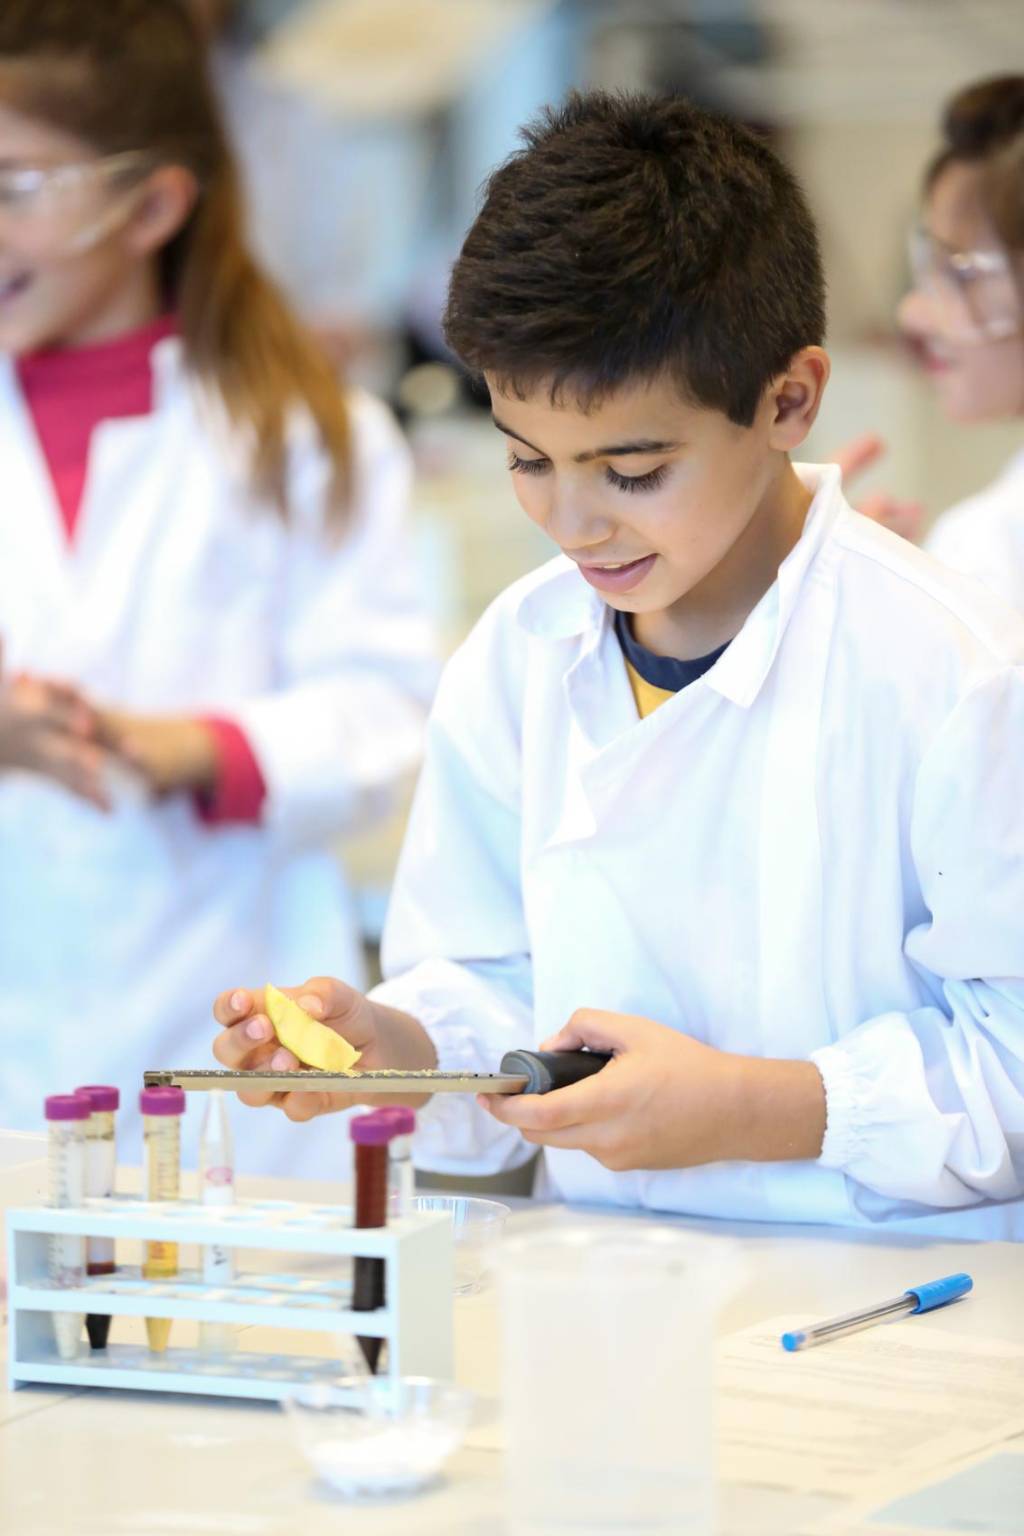 Camice e occhiali, provette e reagenti: i bambini scoprono la scienza con ricercamondo